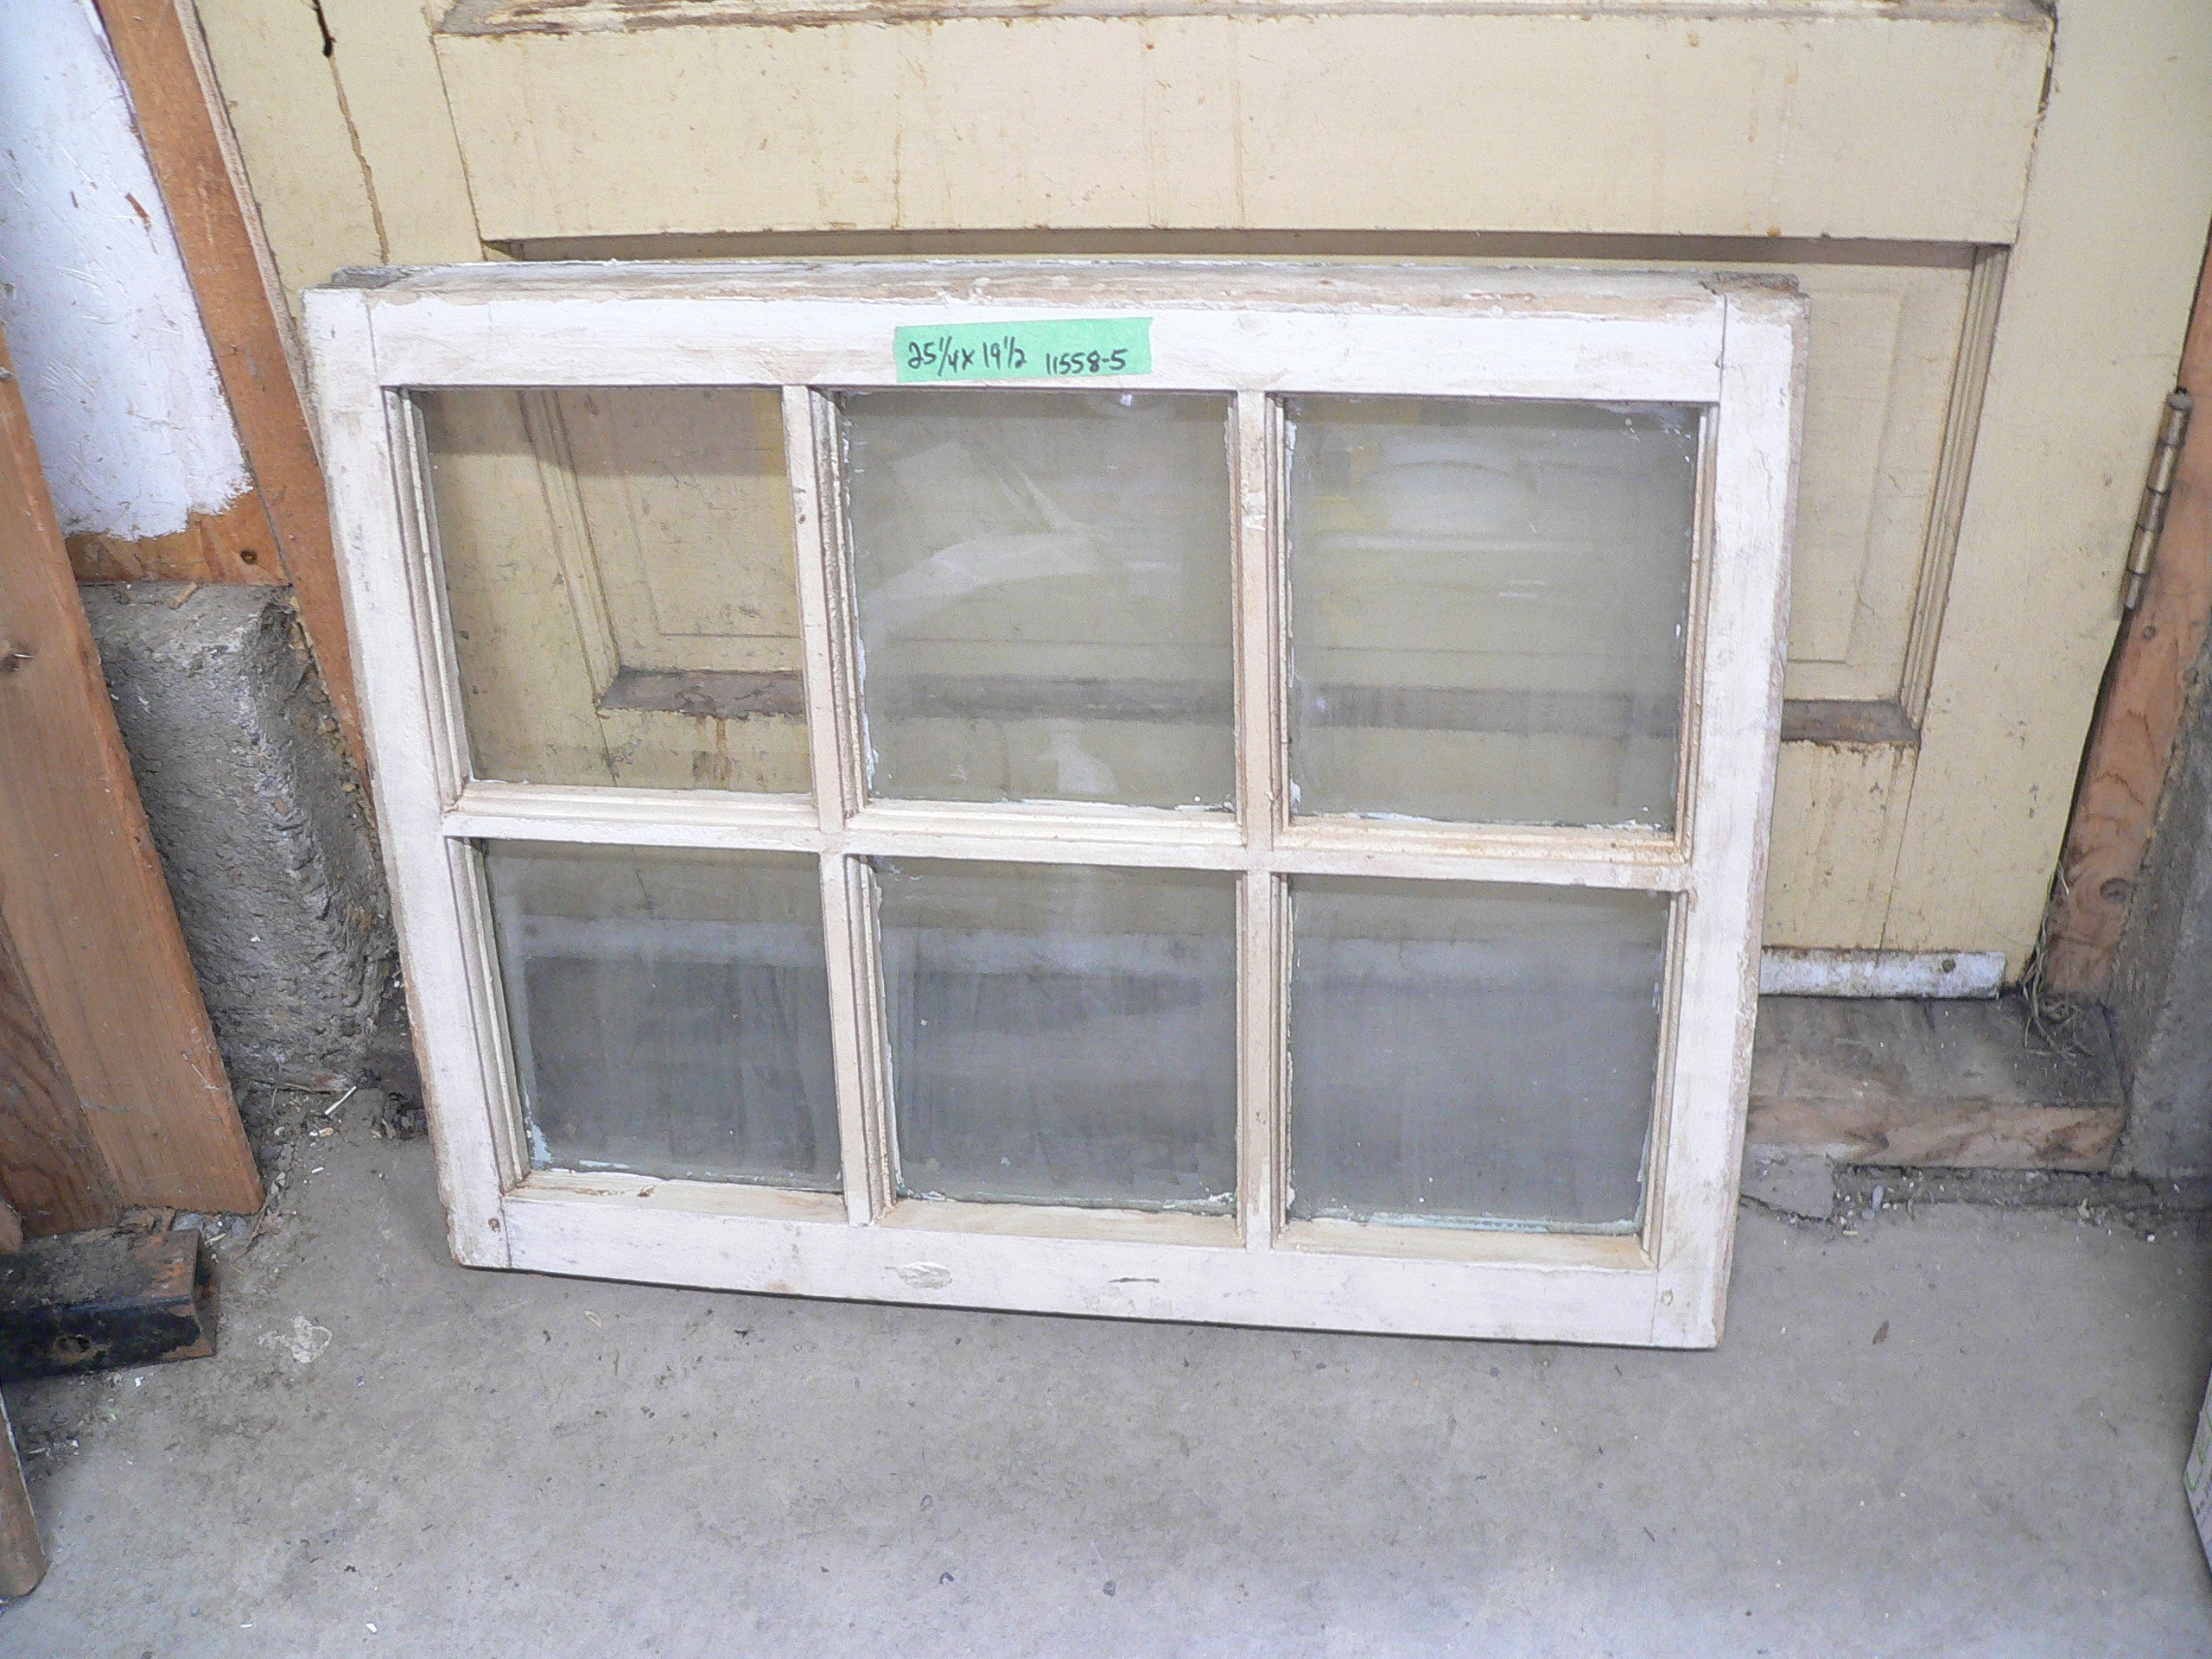 Fenêtre antique a 6 carreaux # 11558.5